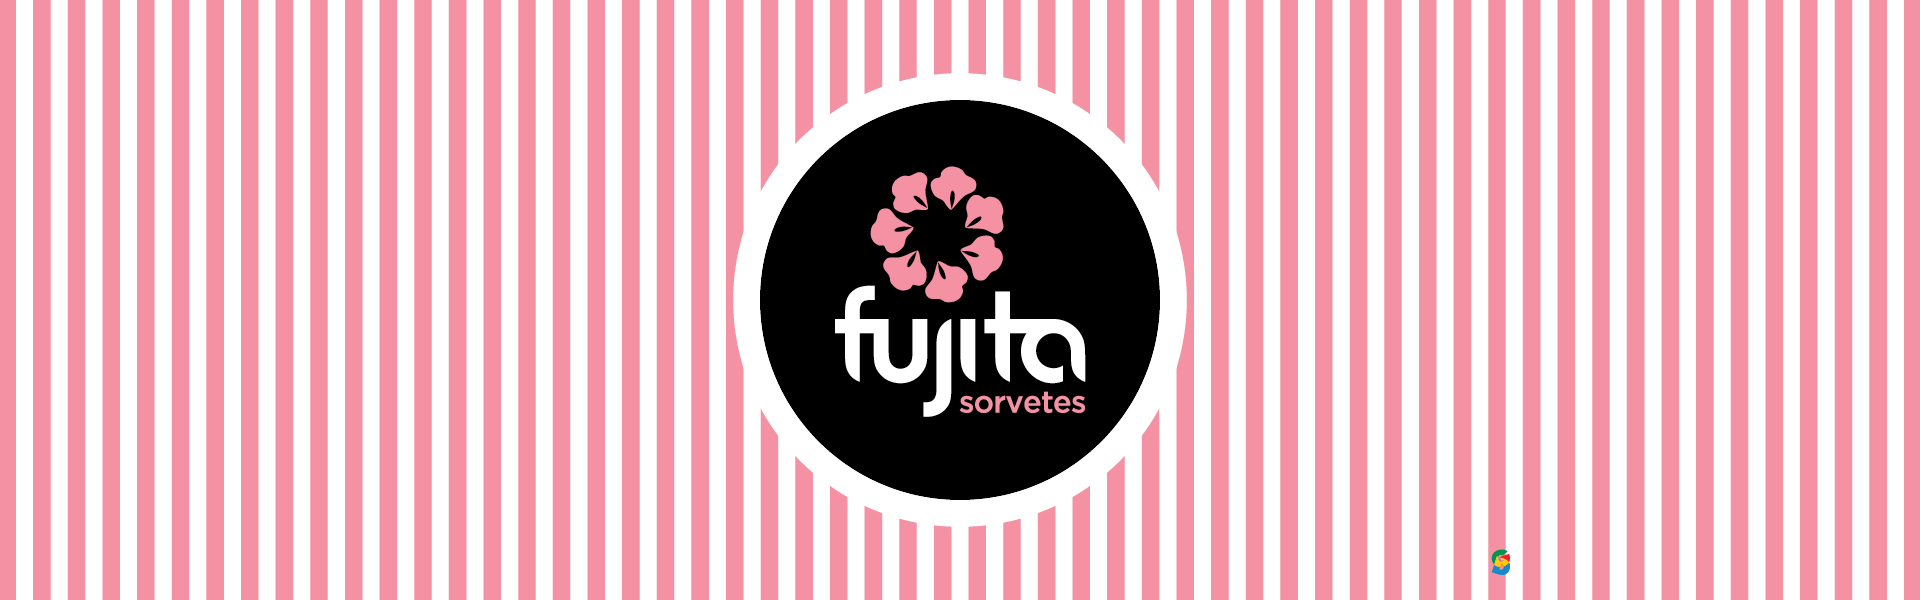 Fujita Sorvete,